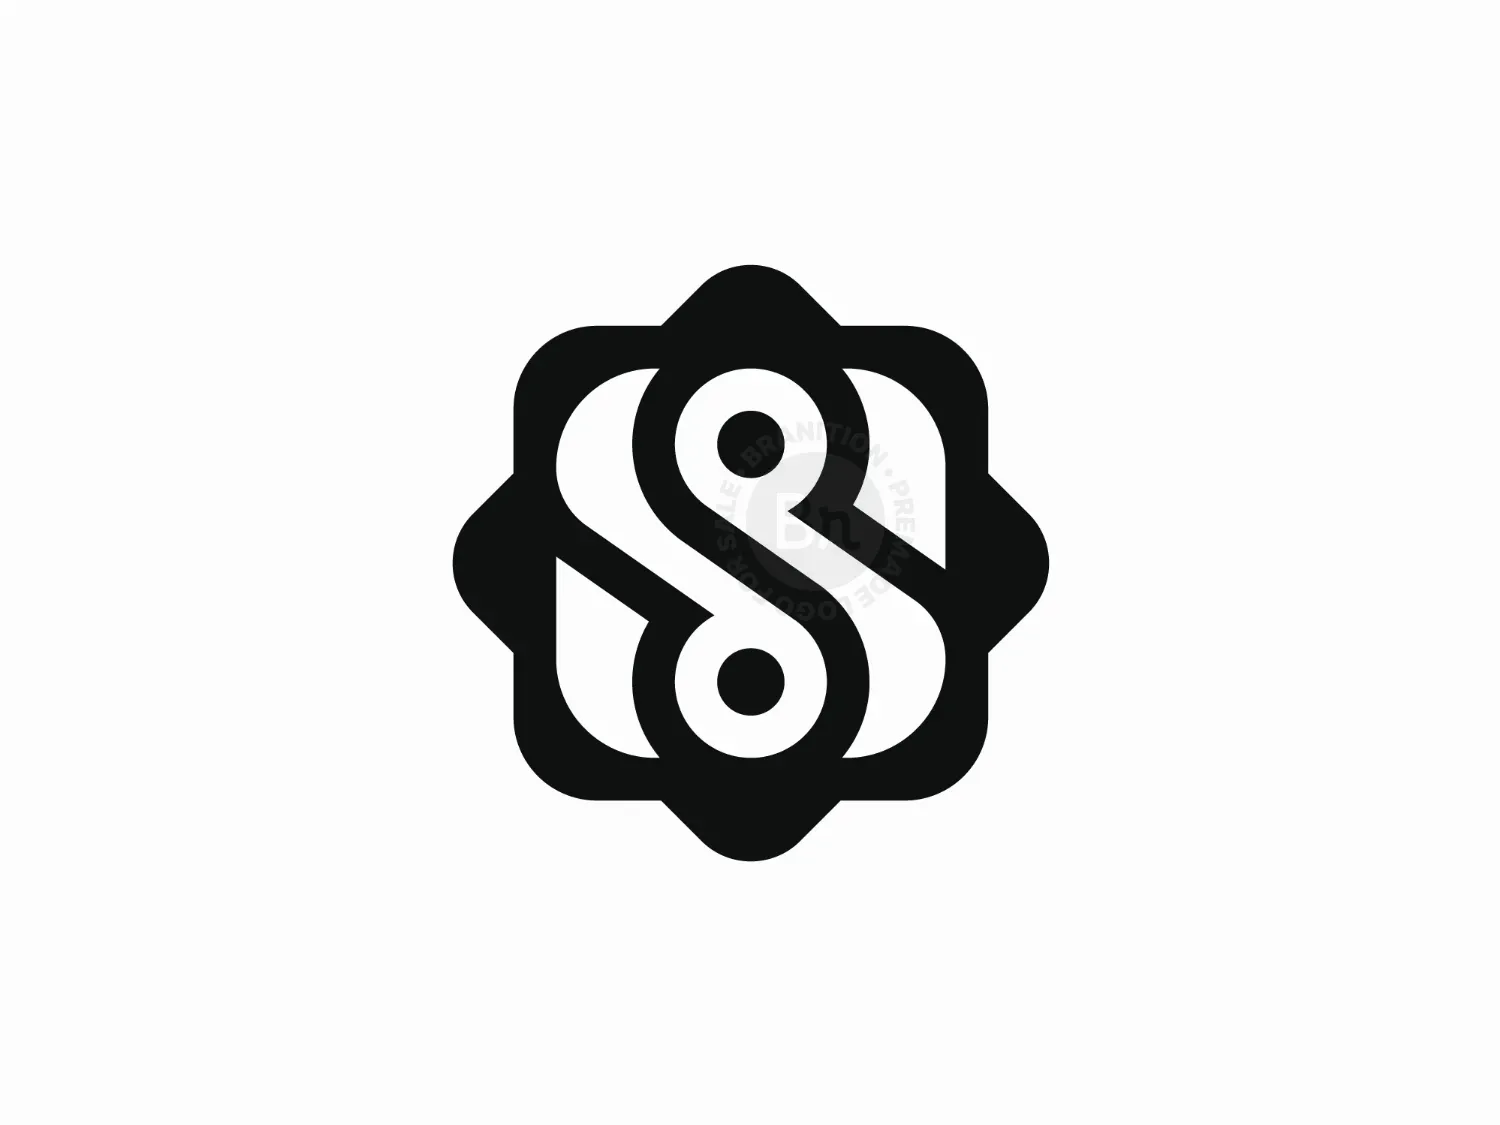 Letter S Geometric Logo